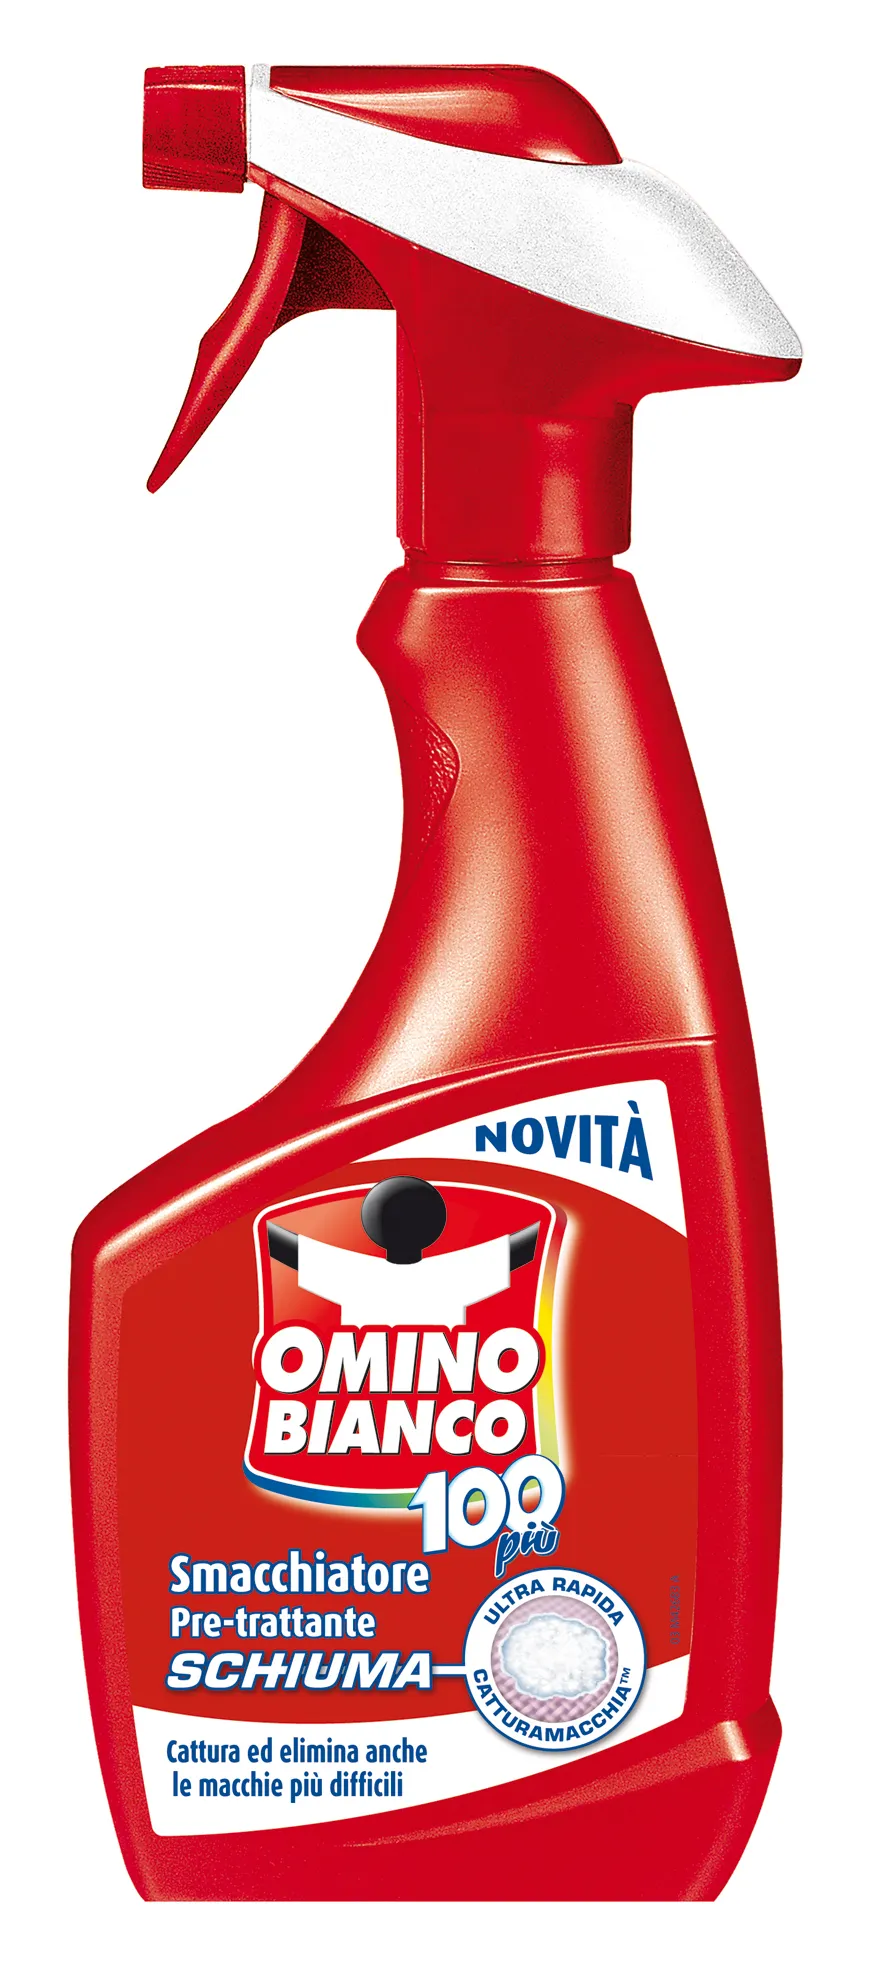 "OMINO BIANCO Smacchiatore Schiuma-Spray 500 Ml. Detergenti Casa"